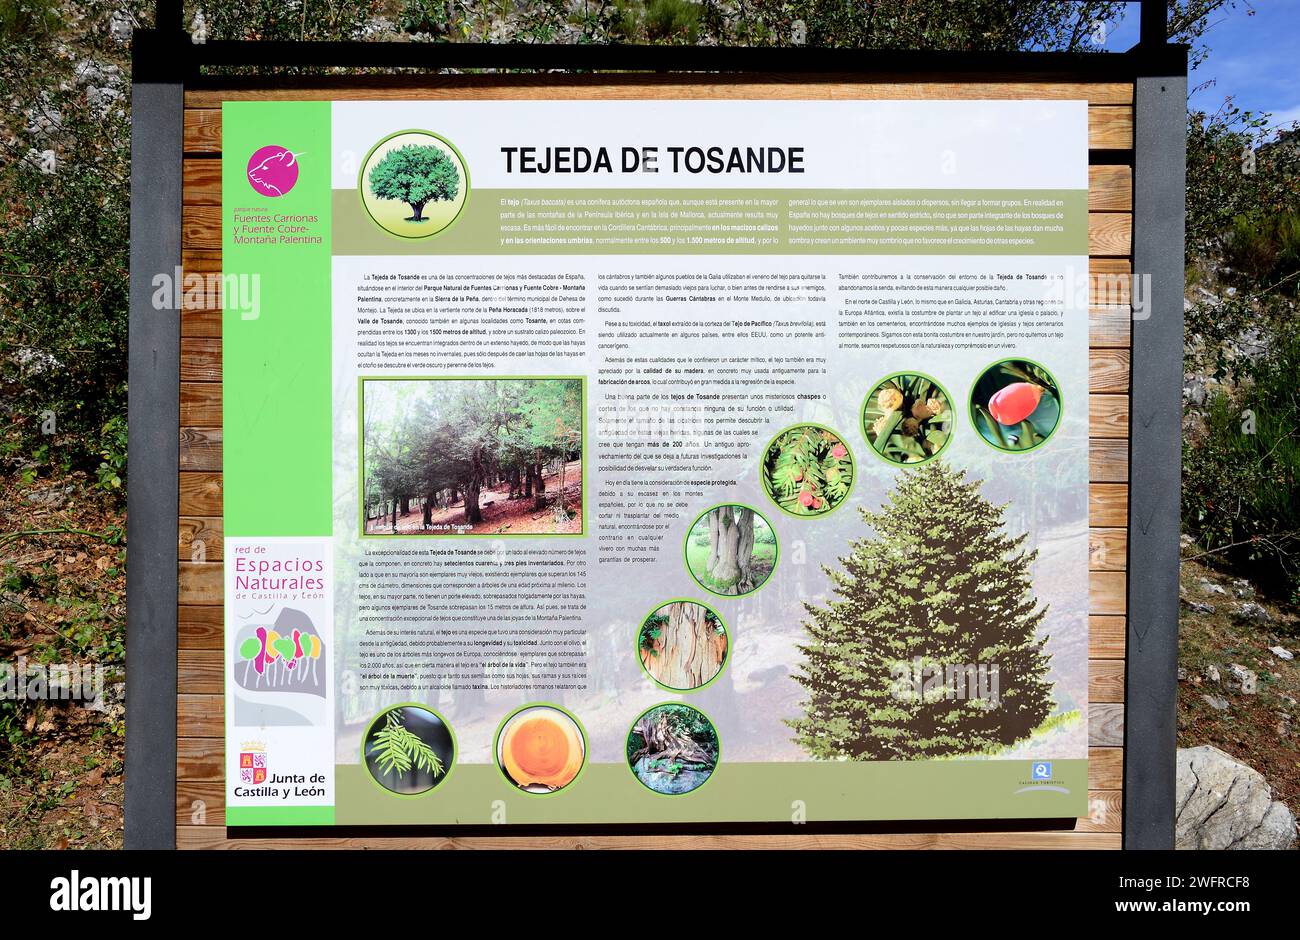 Tejeda de Tosande Natural Park, poster. Montaña Palentina, Palencia province, Castilla y Leon, Spain. Stock Photo